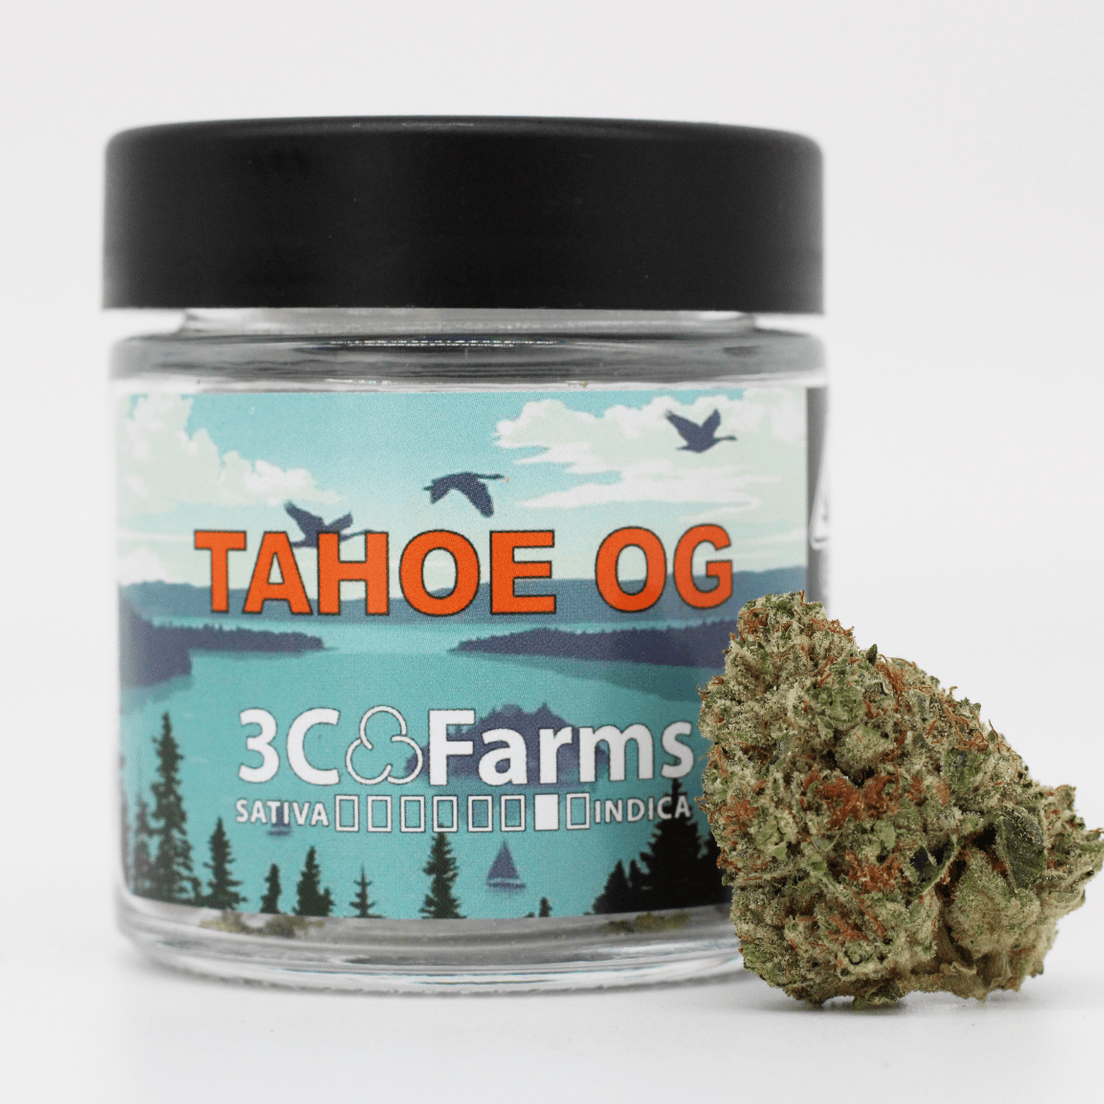 B. 3C Farms 3.5g Flower - Quality 9.5/10 - Tahoe OG